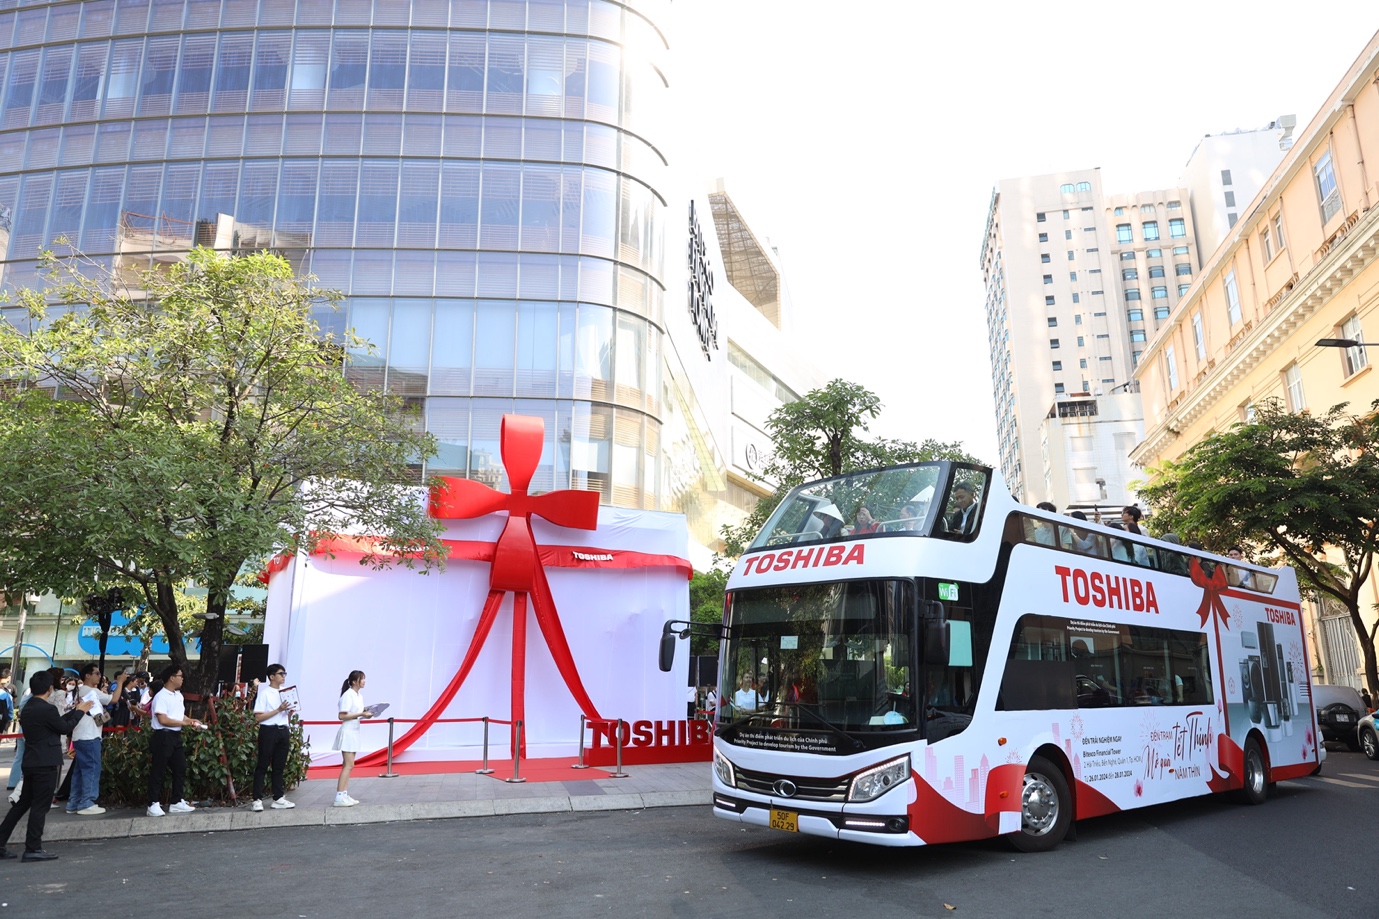 Toshiba khuấy động bầu không khí Tết đến xuân về bằng một chuyến dạo chơi đầy hứng khởi quanh 2 thành phố lớn